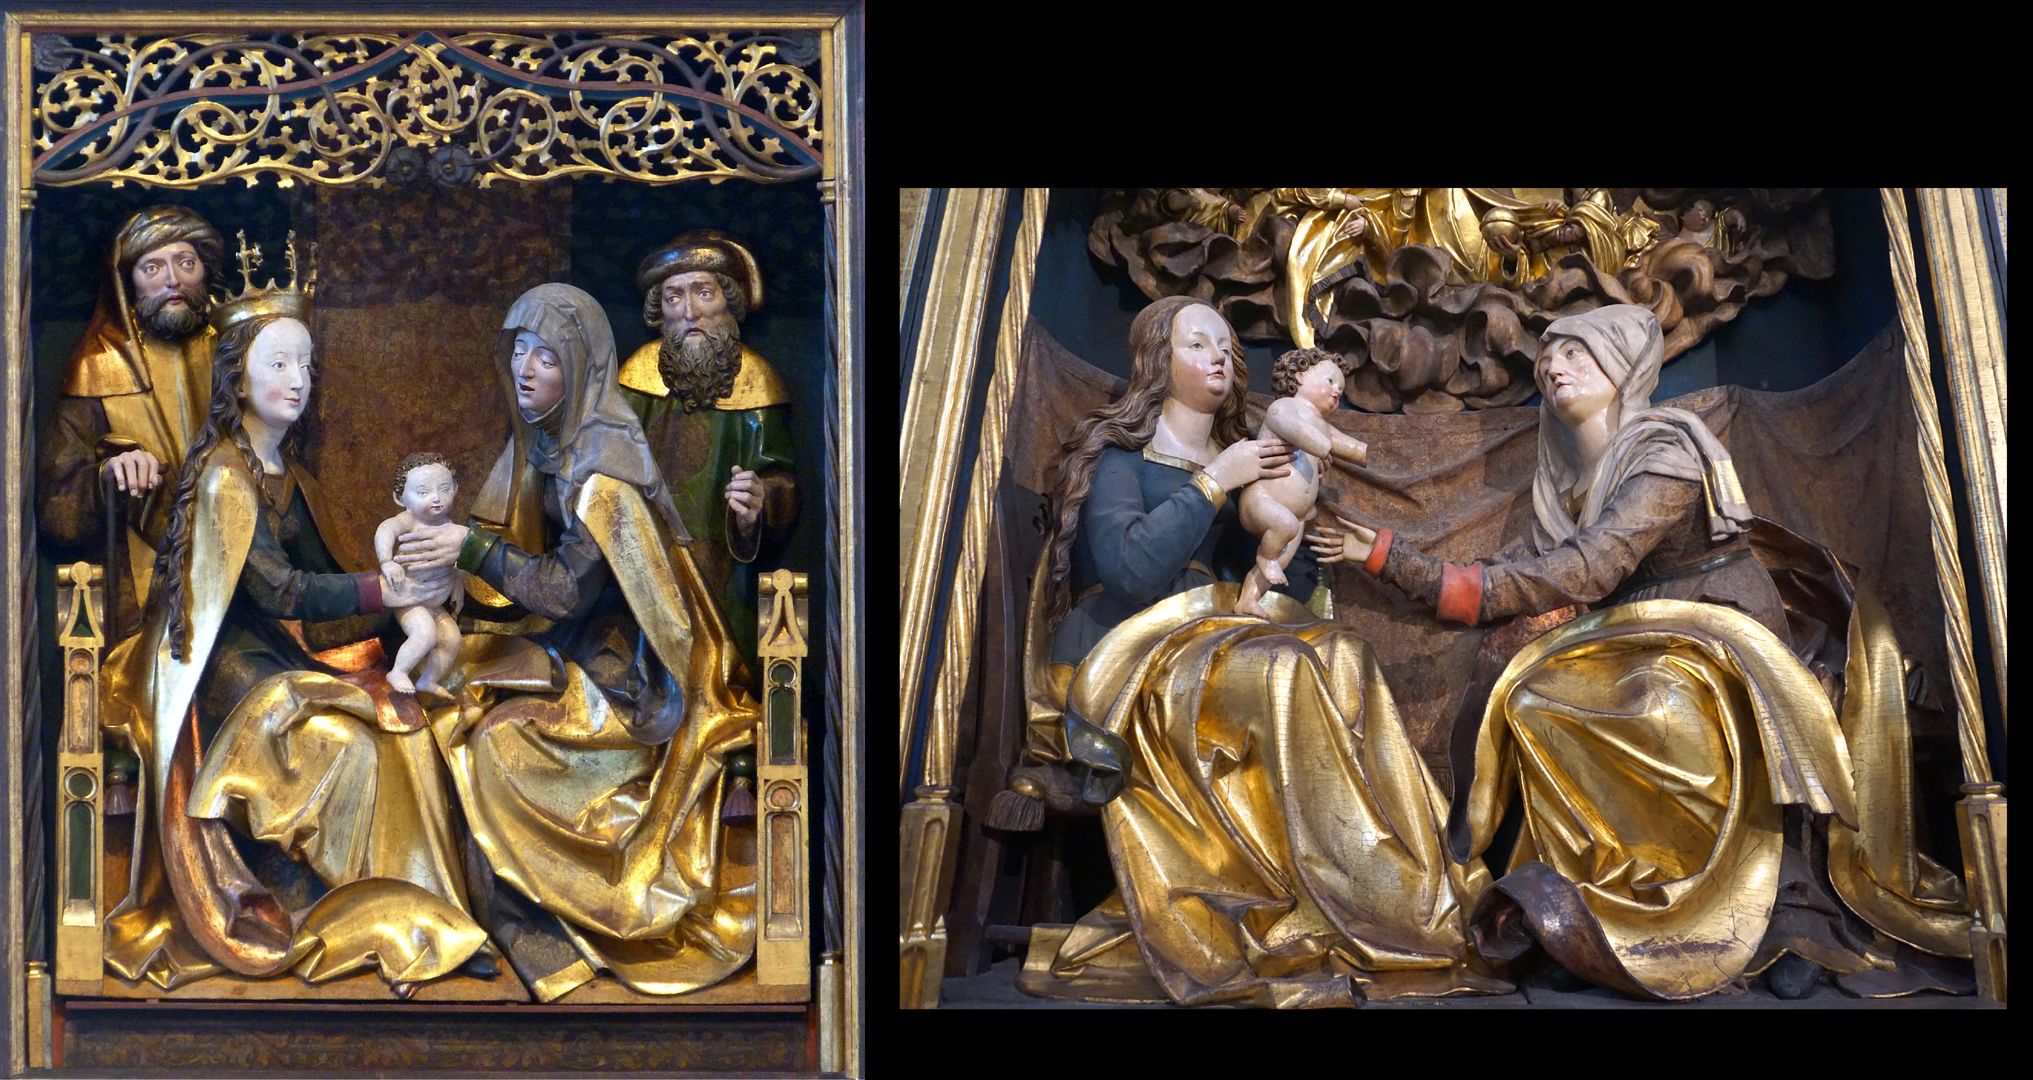 Annen- oder Sippen-Altar Bildvergleich: Sippenaltar in Schwabach von 1508 / Annenaltar in St. Lorenz von 1510: Ähnlicher Szenenaufbau mit goldenen Gewändern, jedoch ist im späteren Altar in St. Lorenz insgesamt eine weichere natürlichere Bewegung der Körpersprache erreicht.